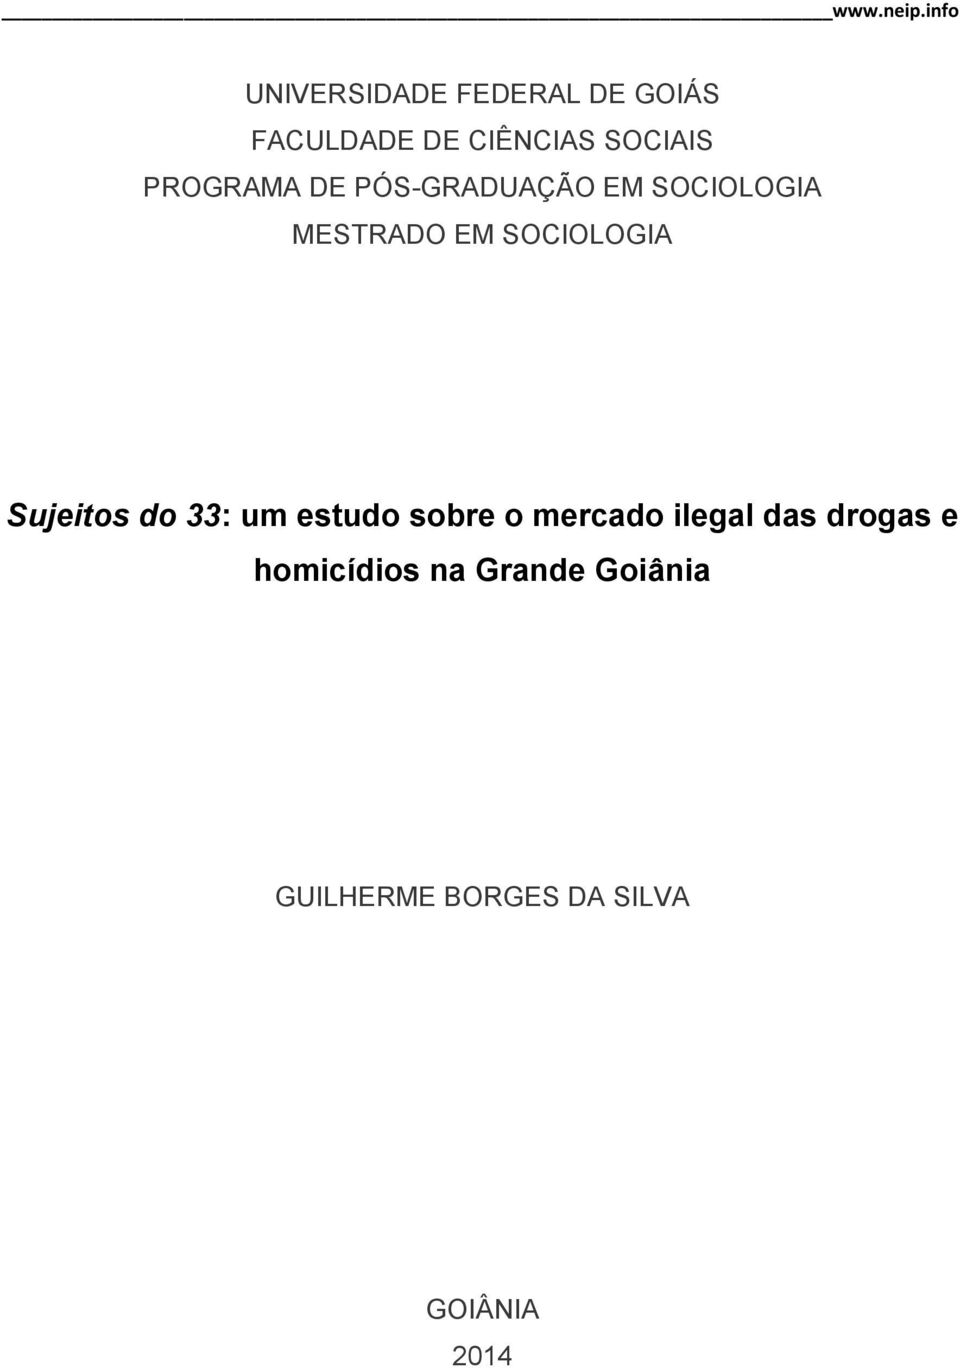 Sujeitos do 33: um estudo sobre o mercado ilegal das drogas e